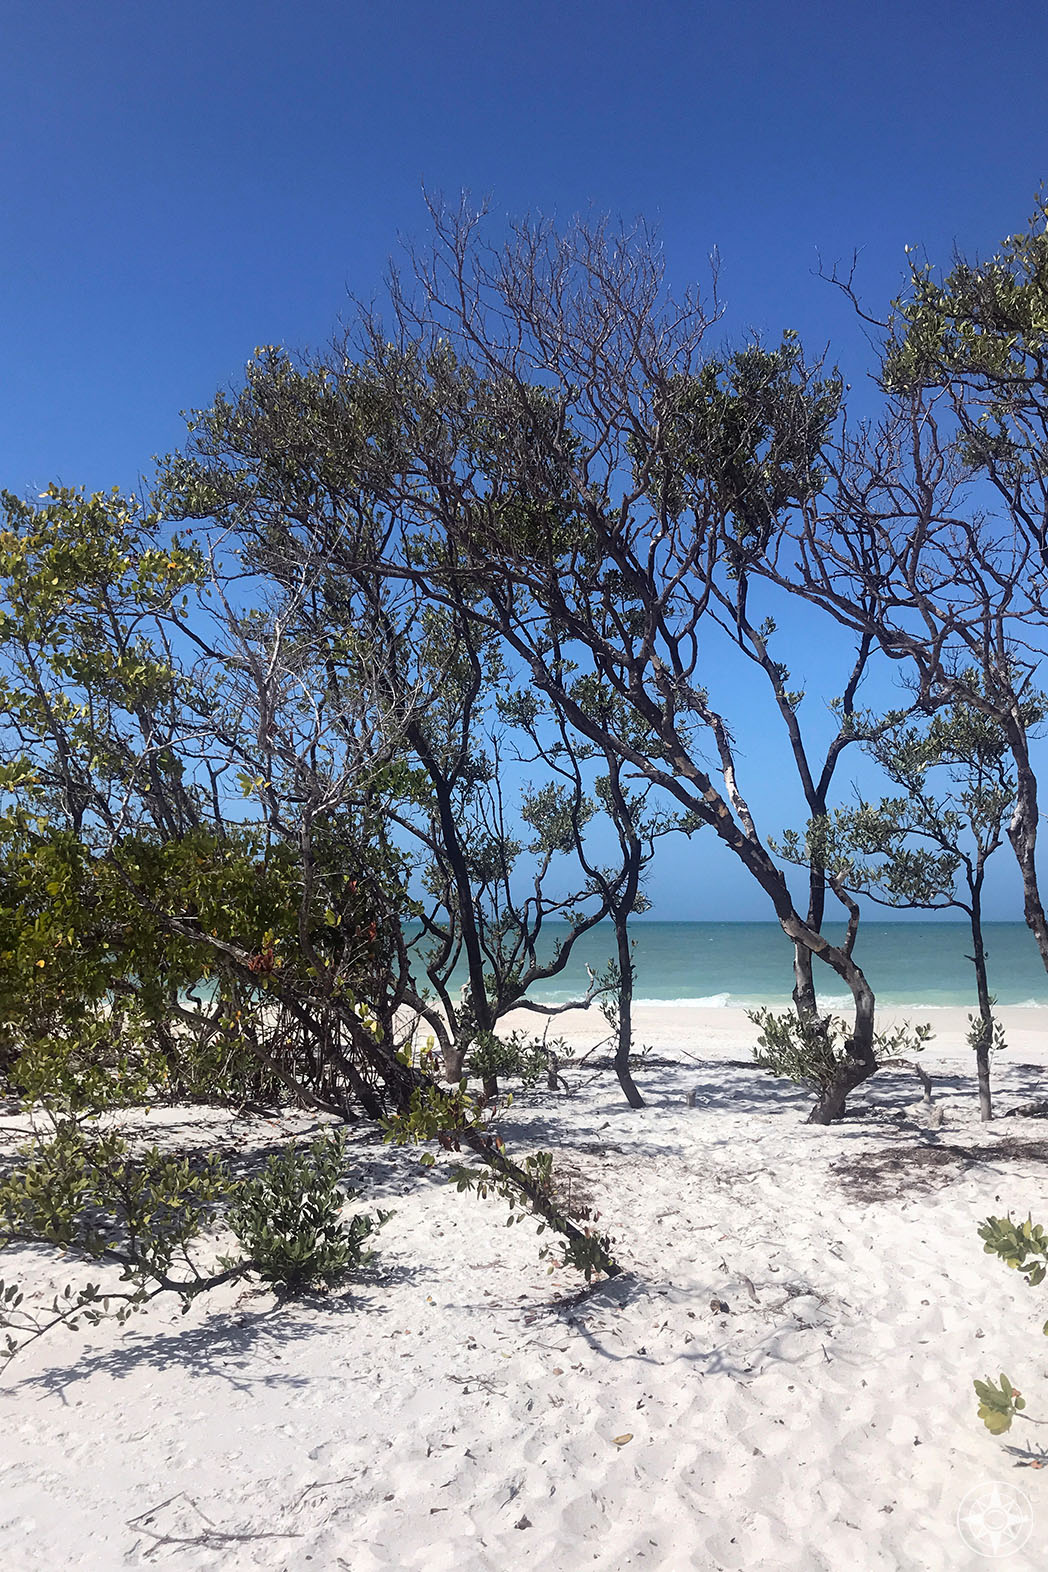  plage de sable blanc de la côte du golfe avec des arbres et un ciel bleu